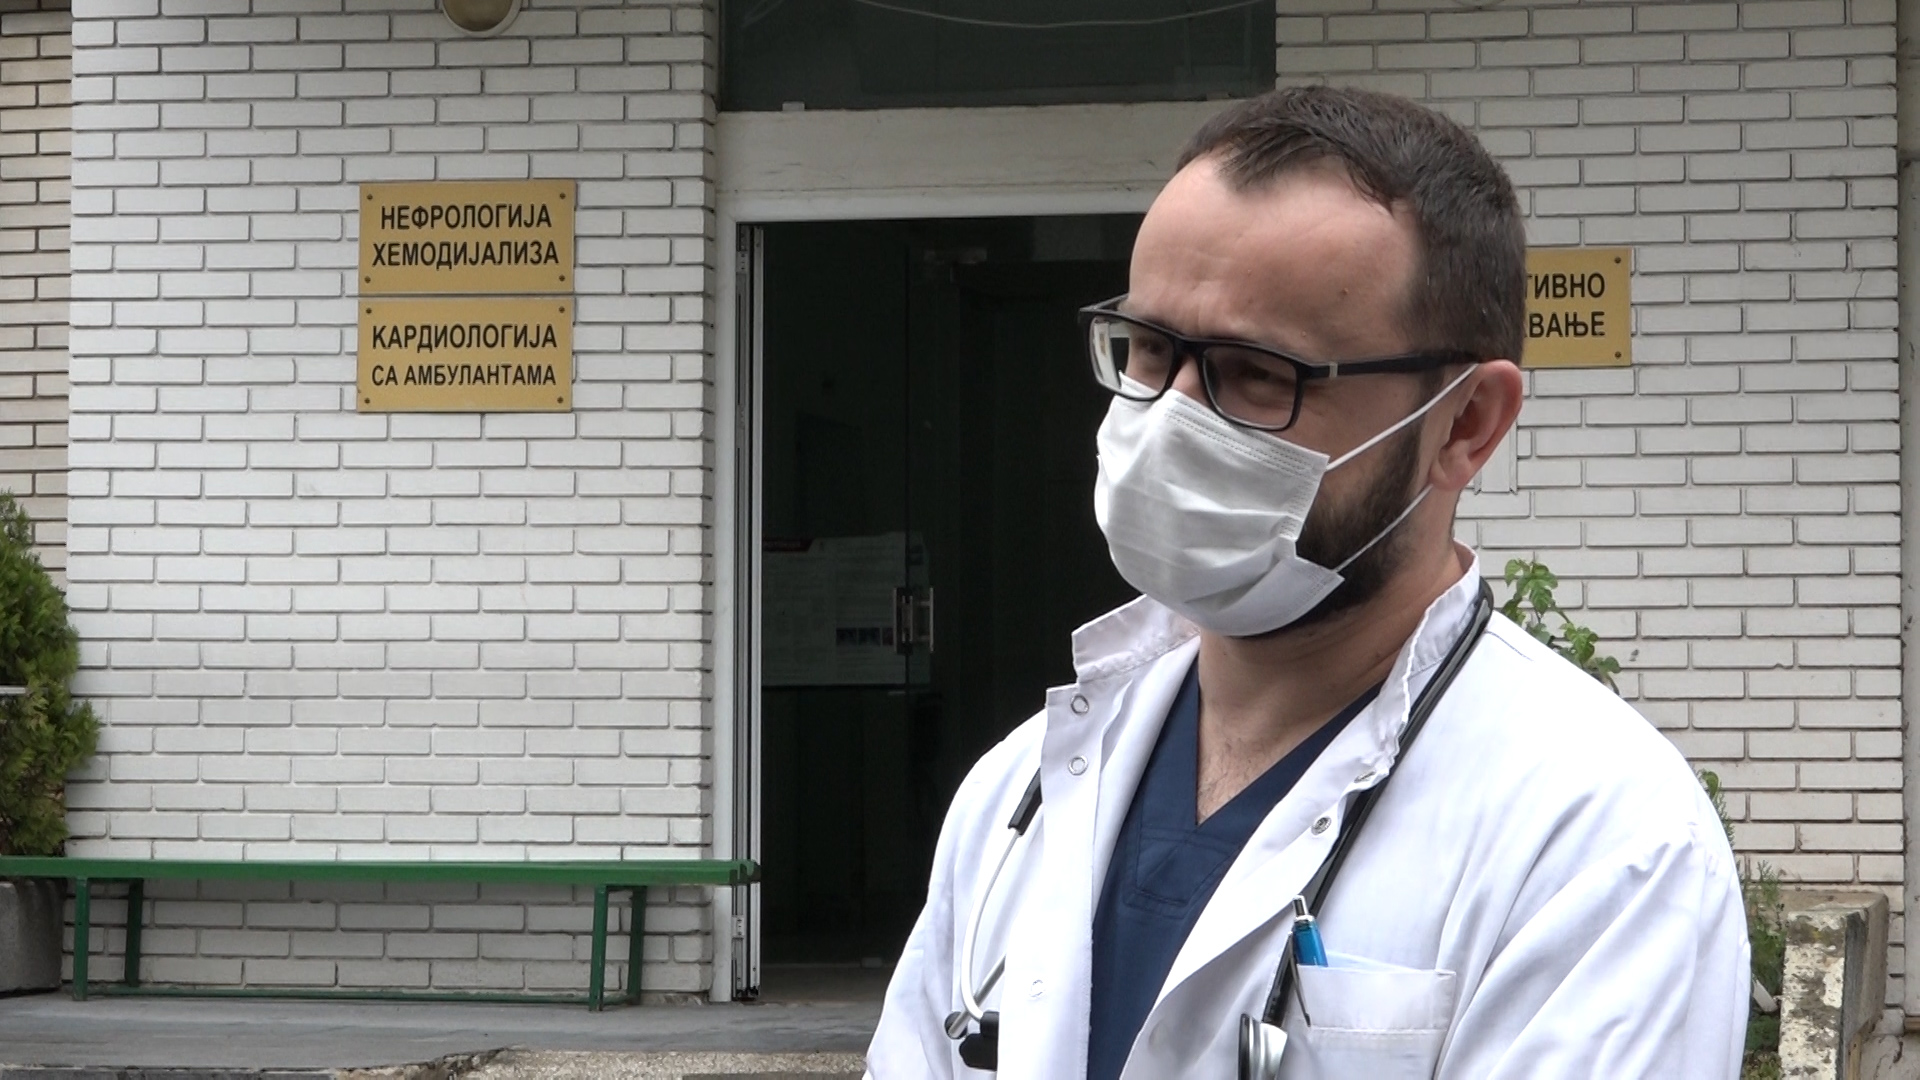 HEROJI POD MASKAMA – Miloš Milenković, specijalista interne medicine